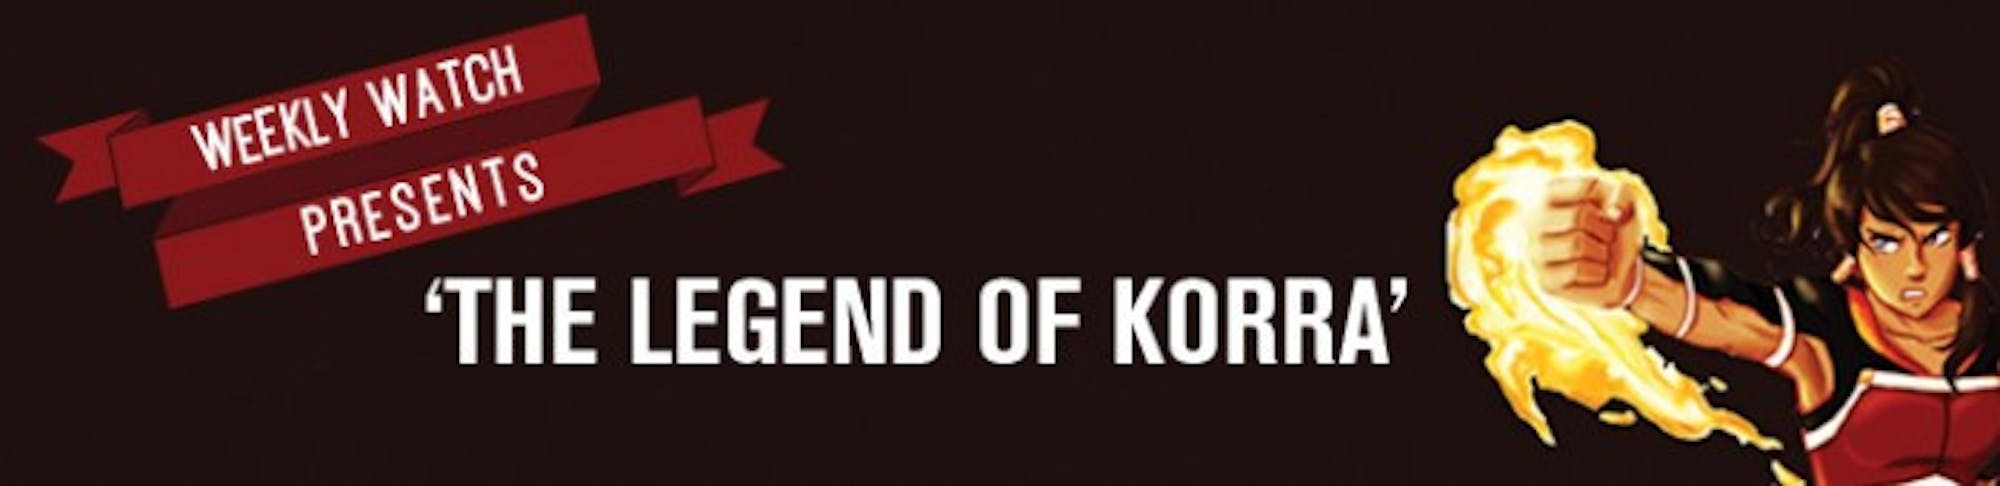 WEB_legend of korra